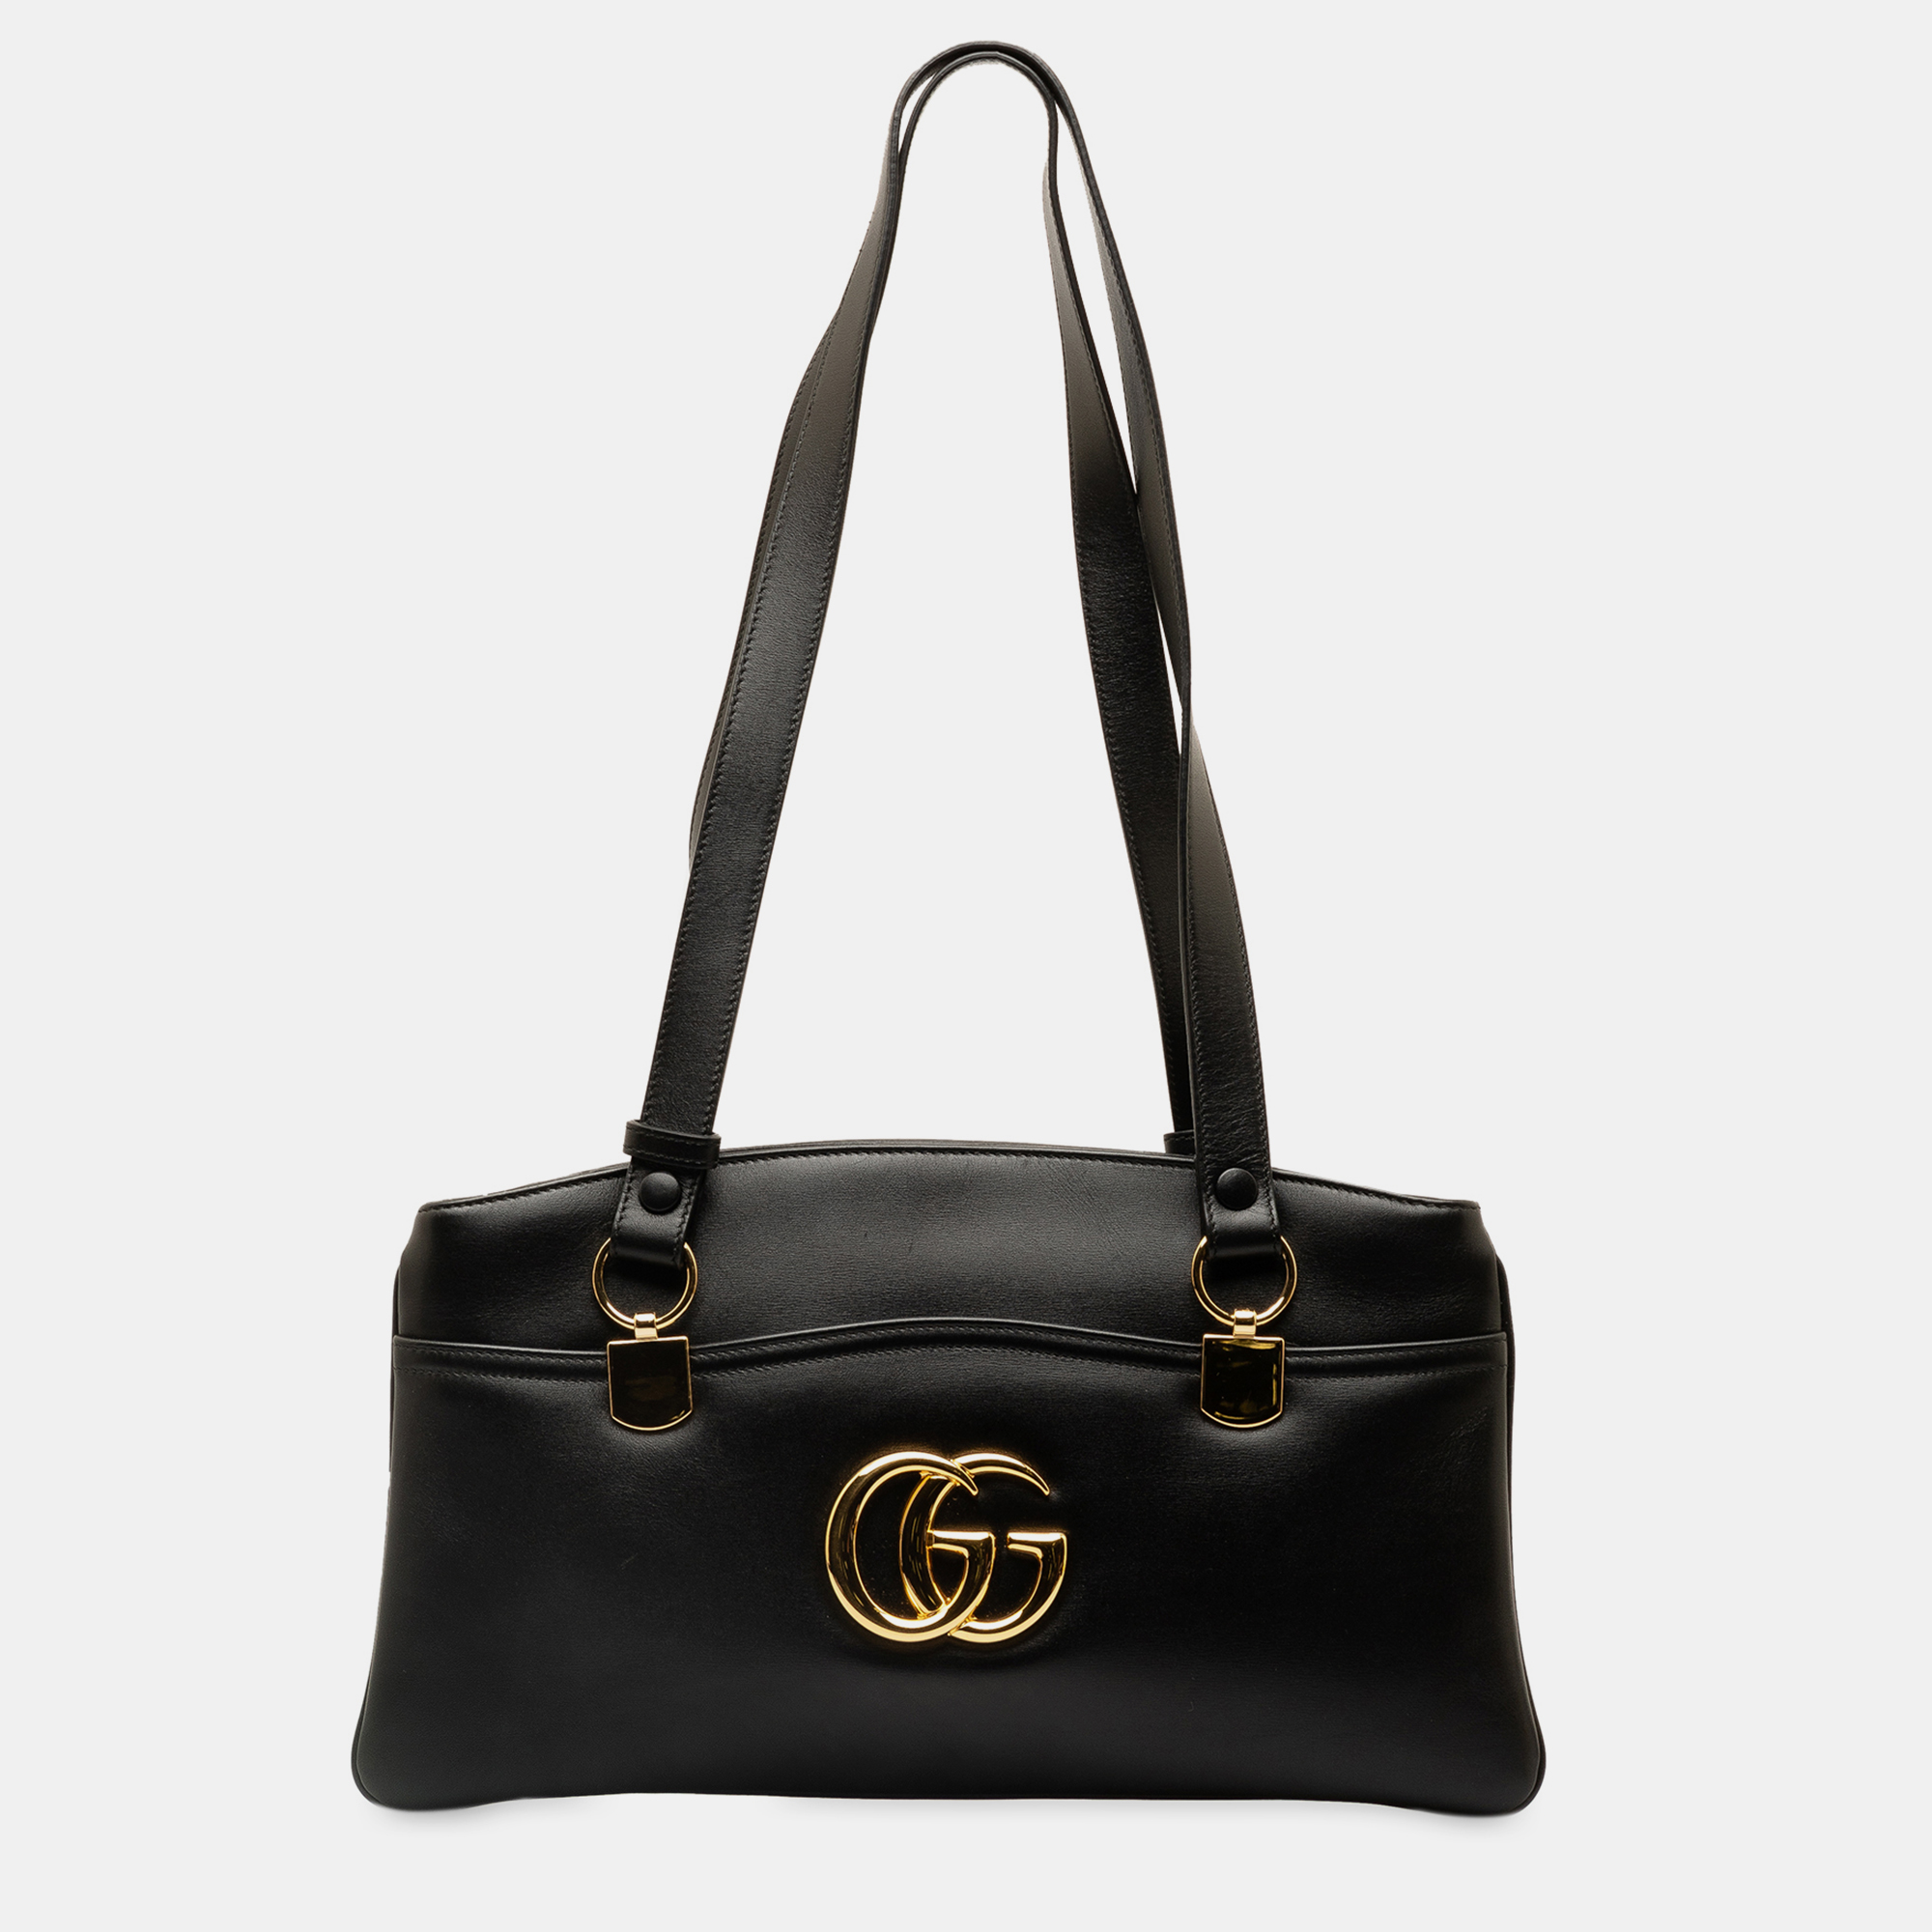 Gucci large arli shoulder bag